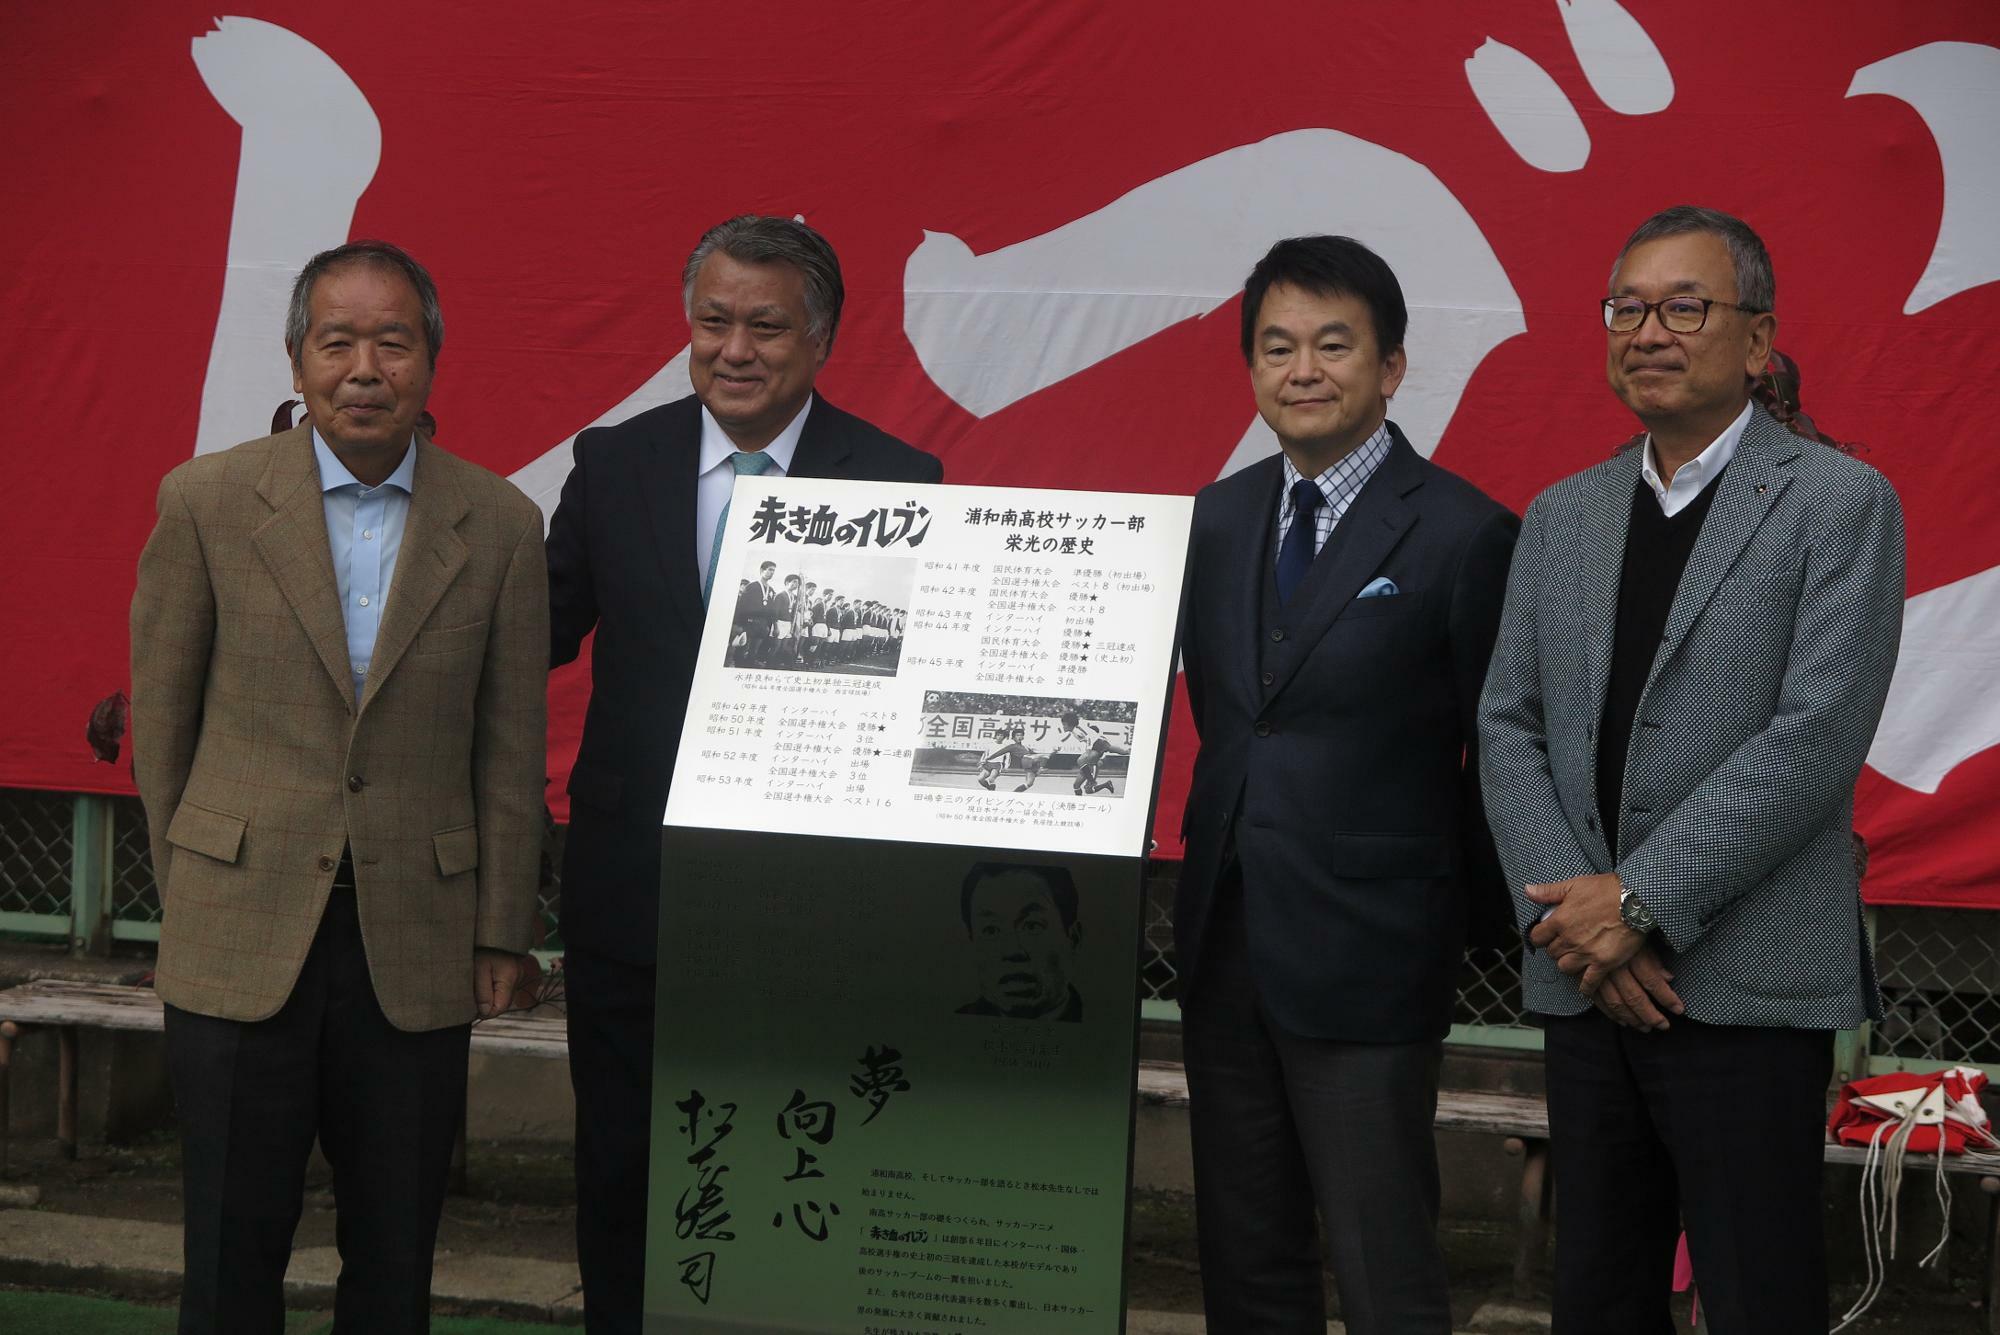 2020年に浦和南高校で行われた記念碑の除幕式には、永井良和さん（浦和南OB）、田嶋幸三日本サッカー協会会長（浦和南OB）、清水勇人さいたま市長、村井満チェアマン（浦和OB）が列席した